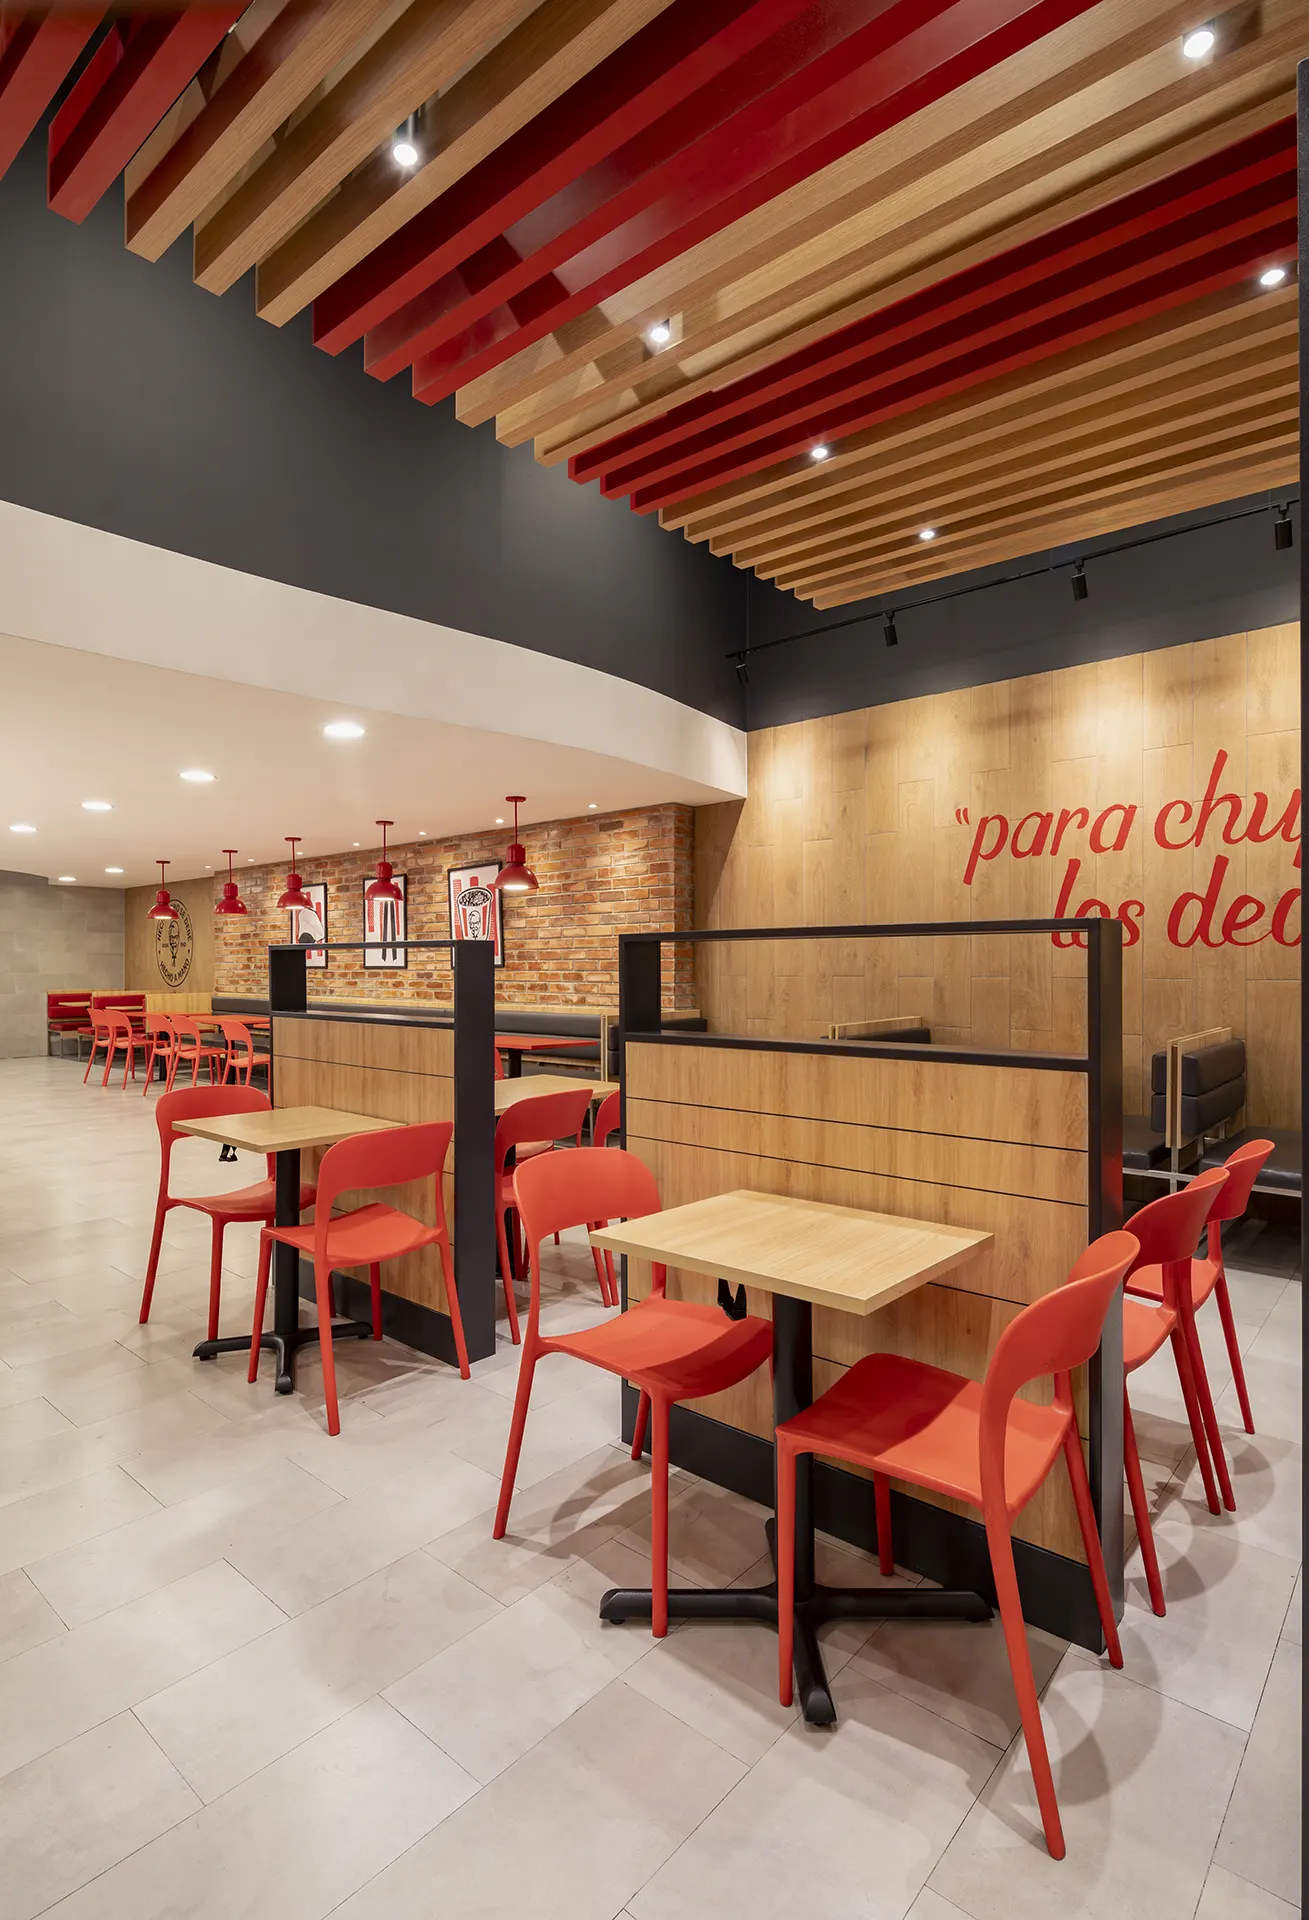 KFC - Diseño arquitectónico, construcción, retail, locales comerciales en Quito | CVD Arquitectura